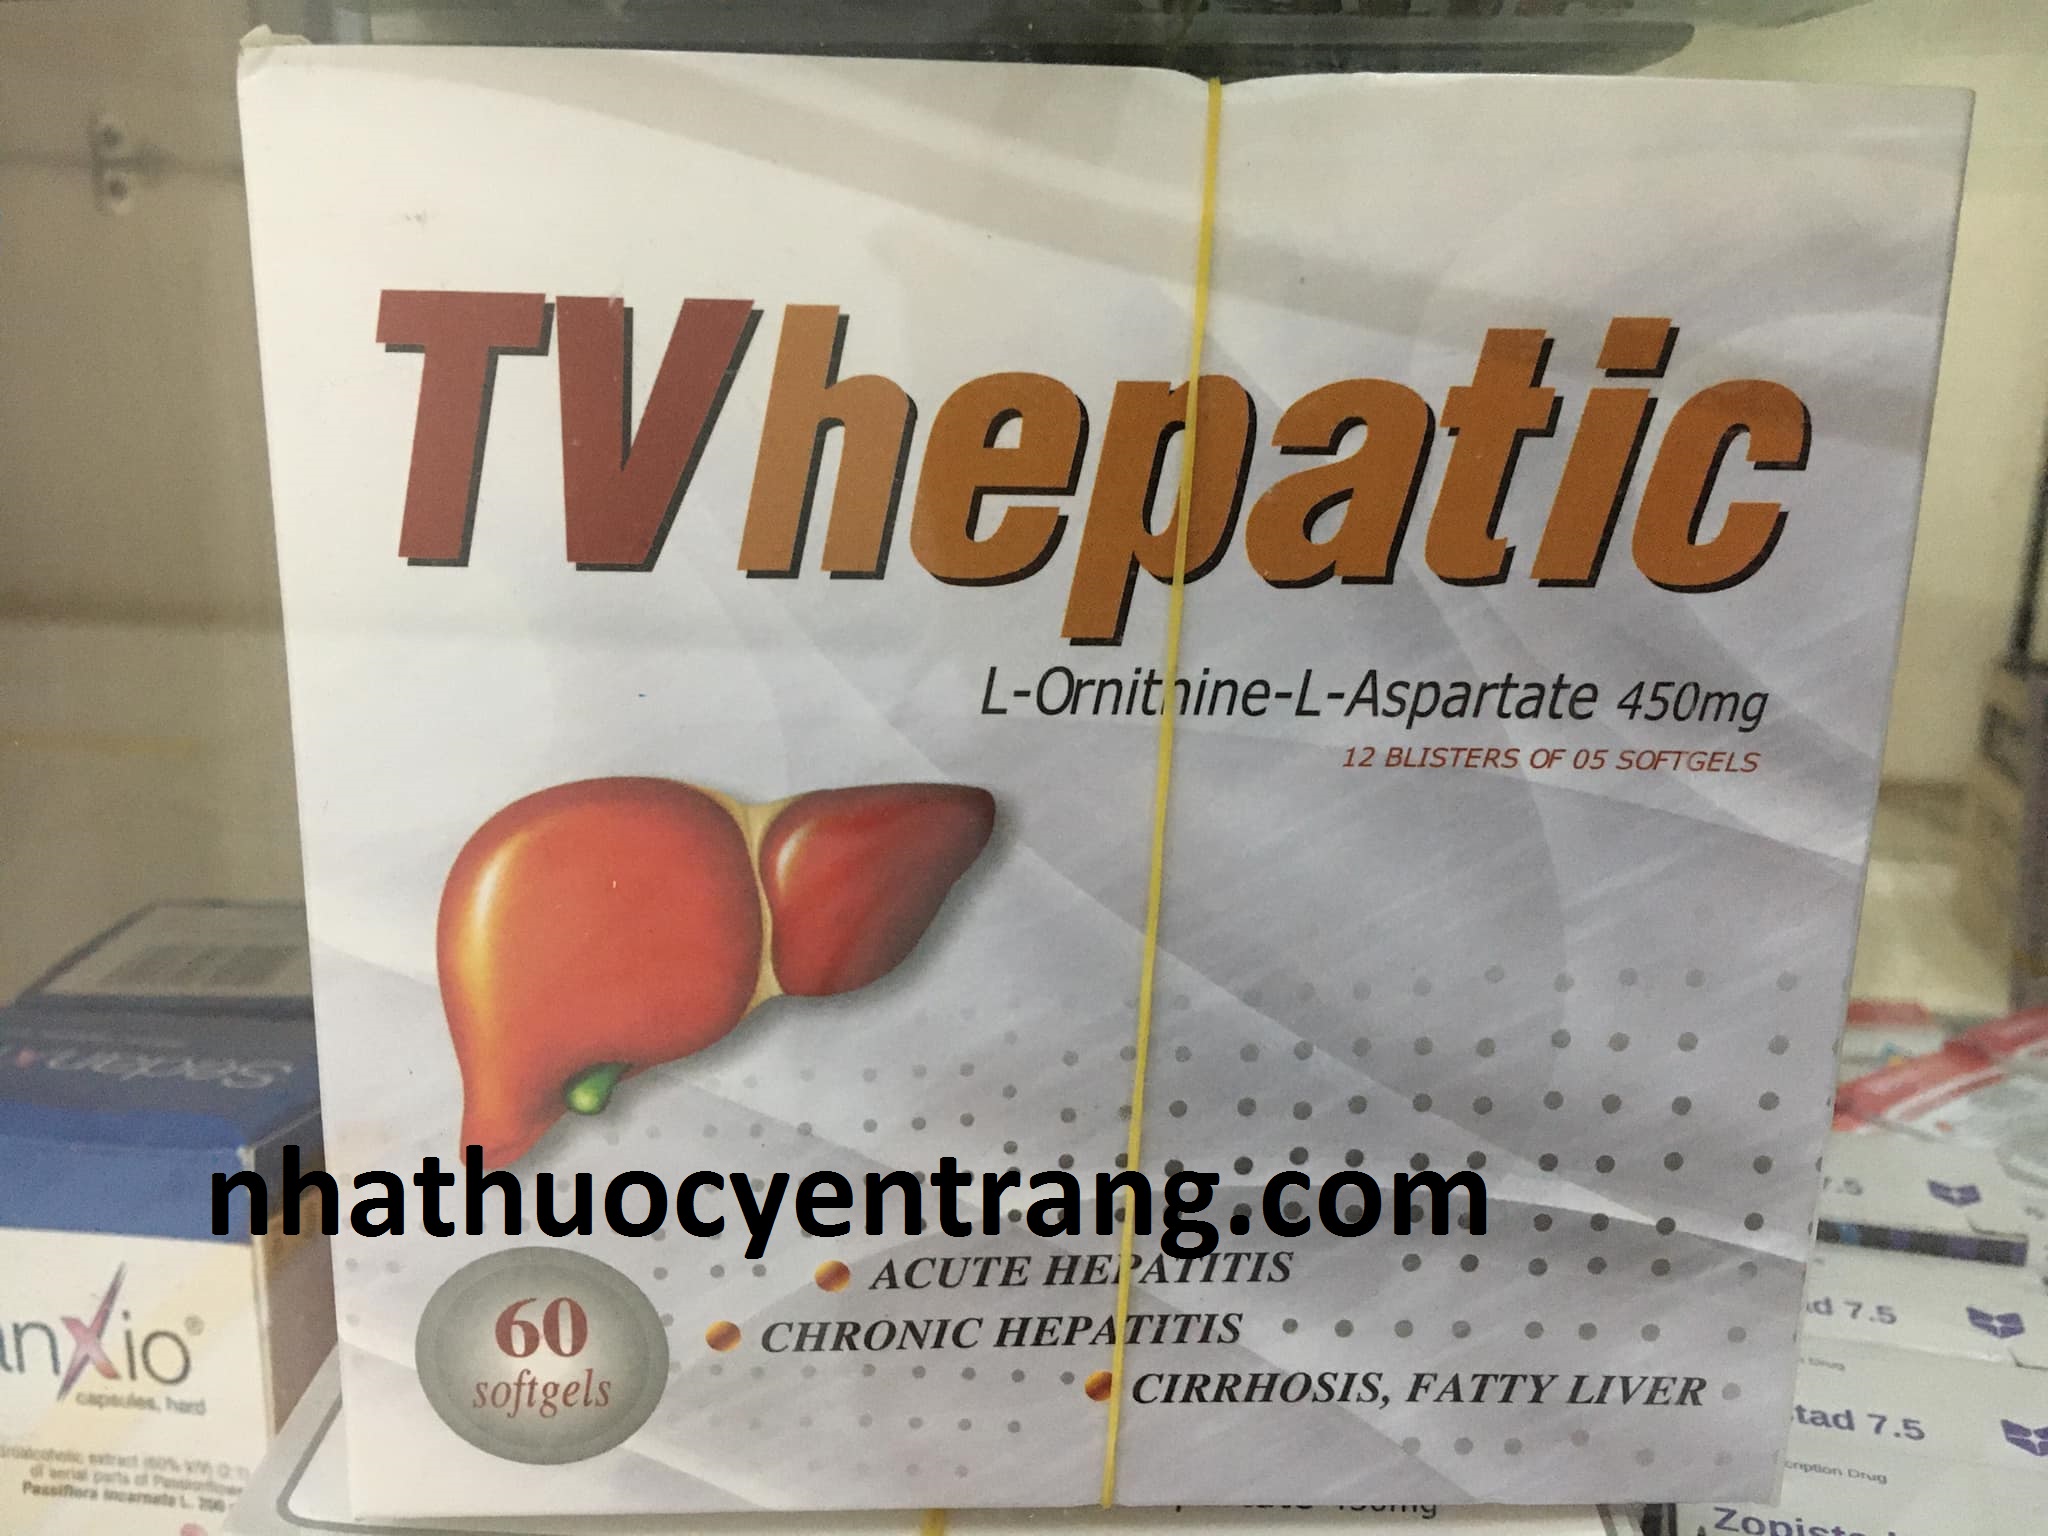 TV Hepatic